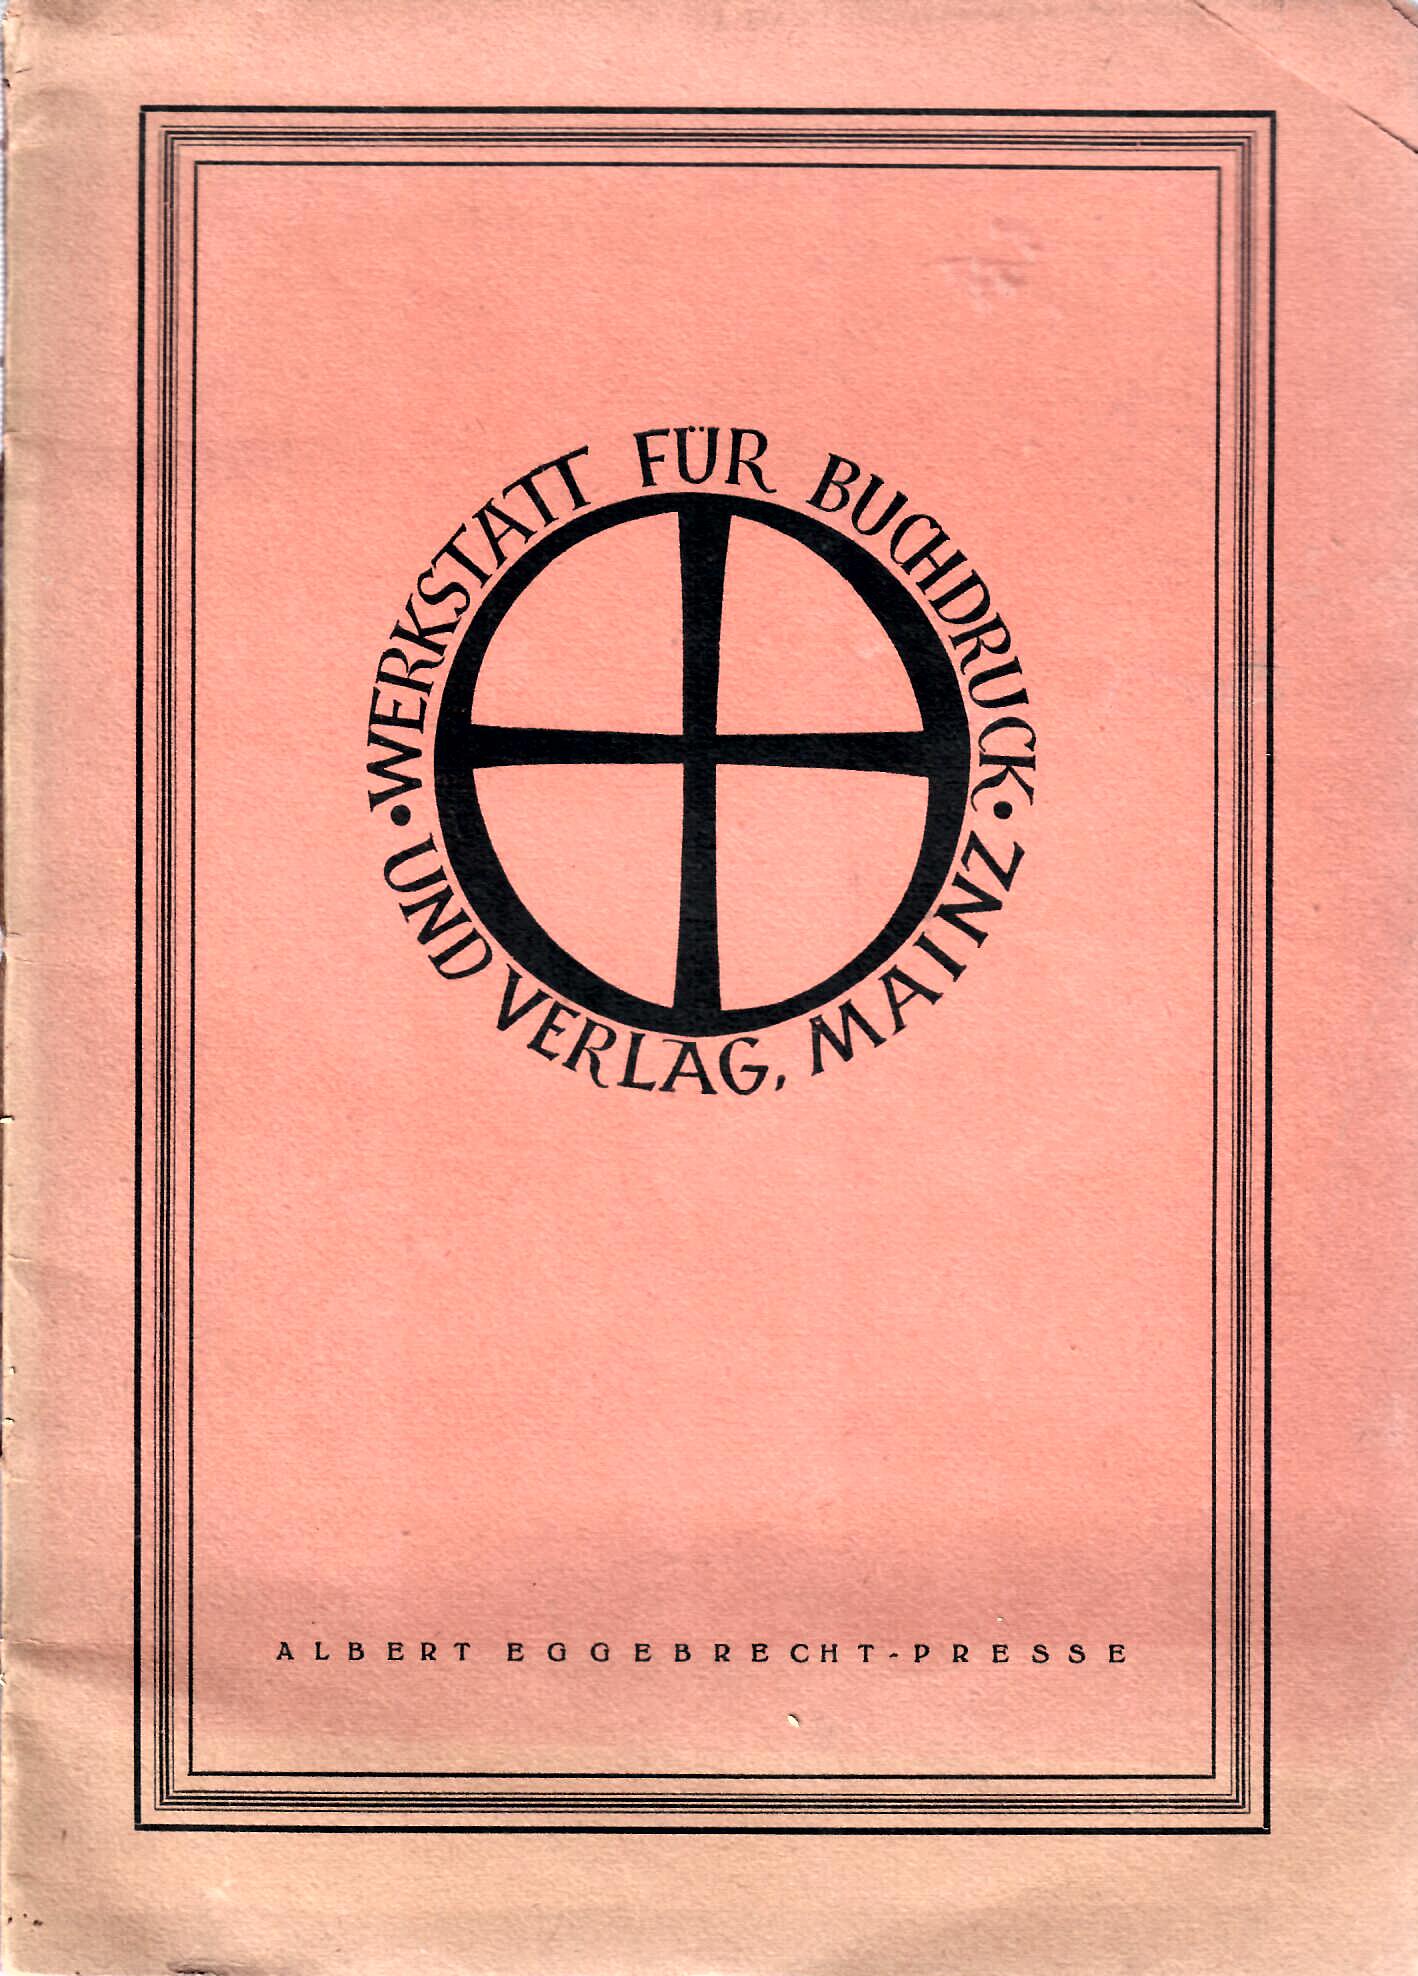 Eggebrecht, Albert   : Werkstatt fr Buchdruck und Verlag Mainz : Sortimentsbersicht : Albert Eggebrecht-Presse : vermutlich 1905 :